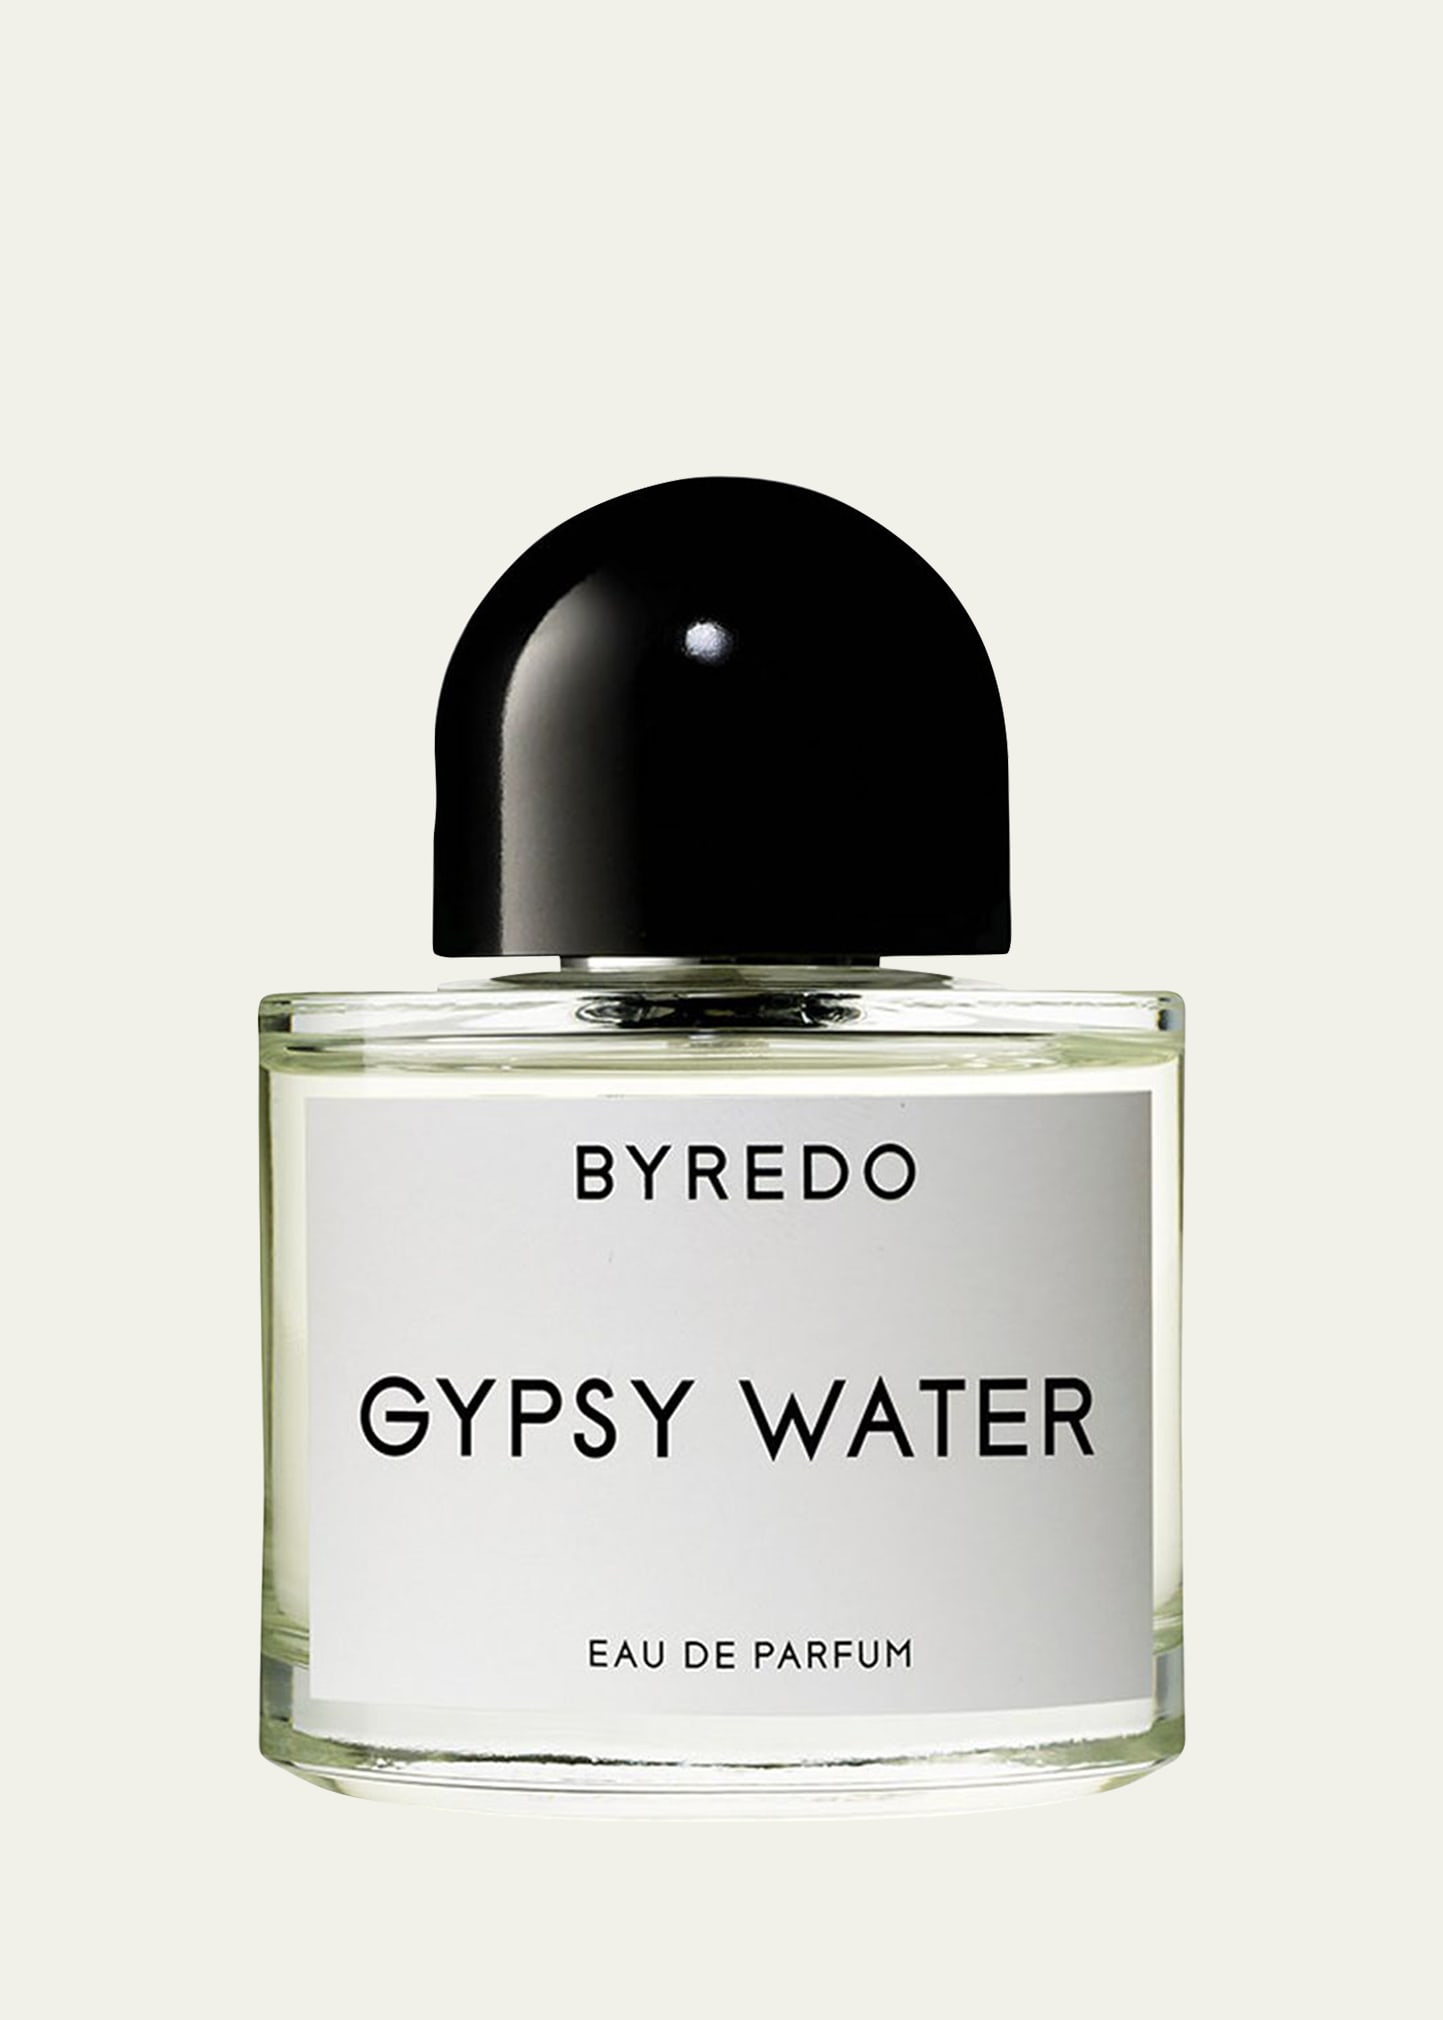 Gypsy Water Eau de Parfum, 1.7 oz.